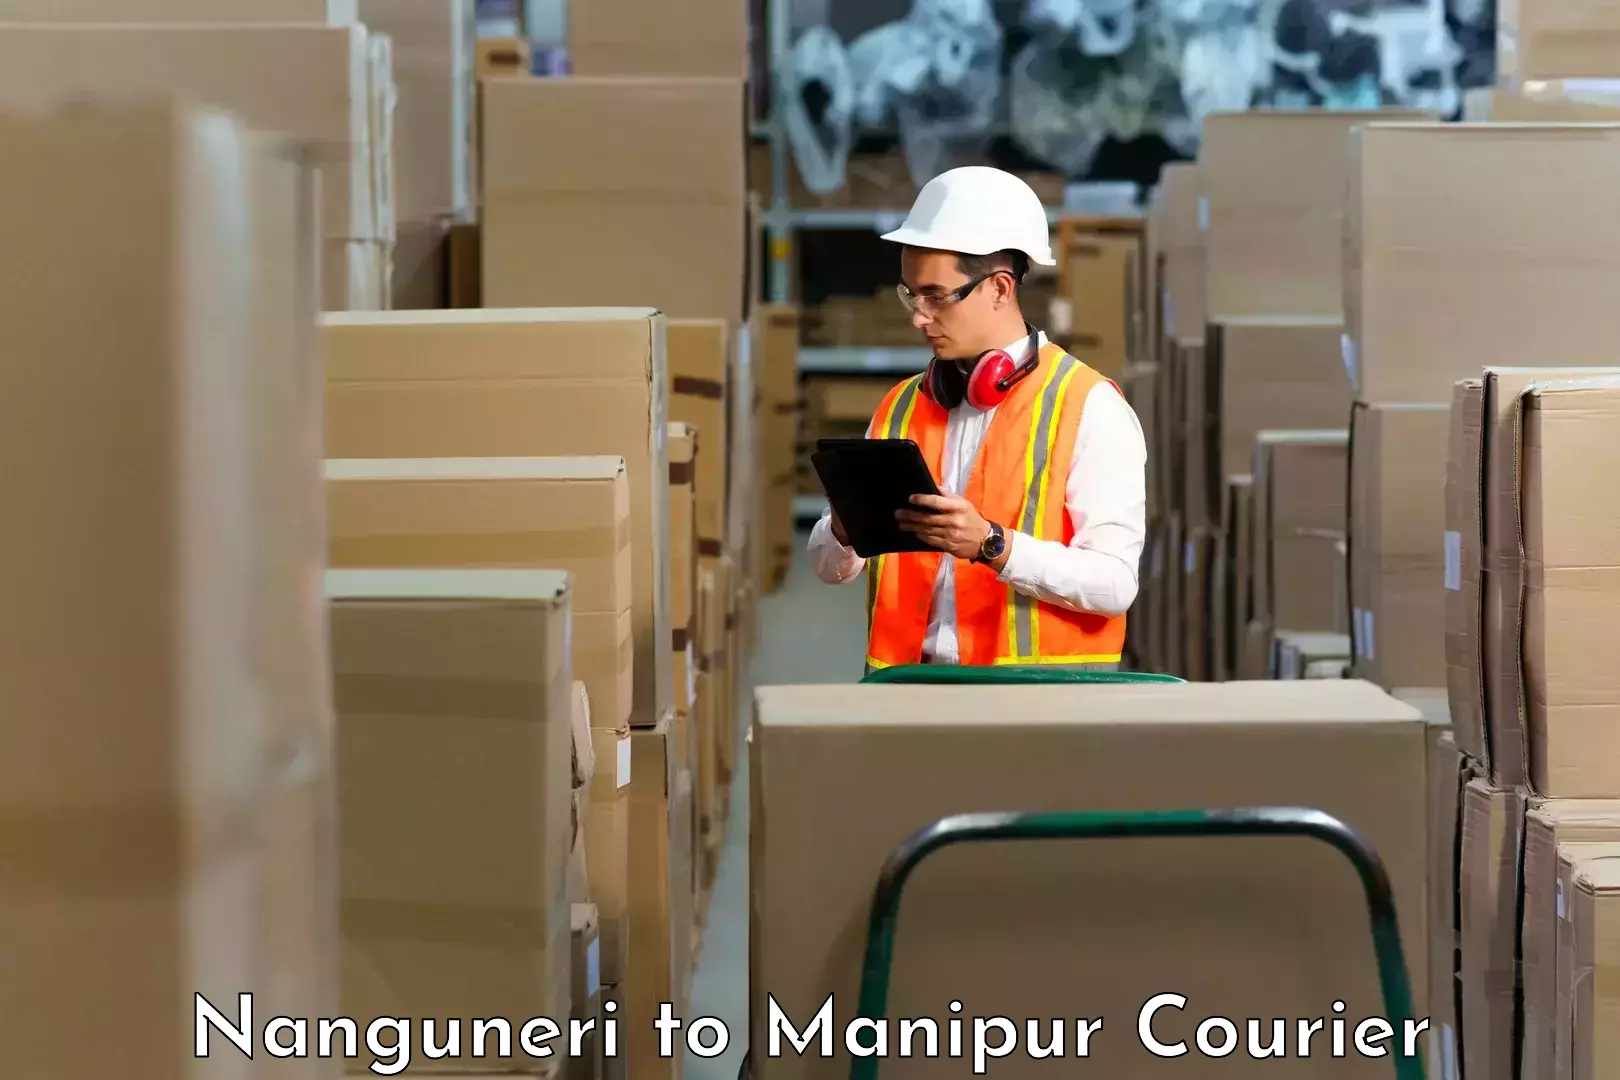 Professional courier handling Nanguneri to Imphal